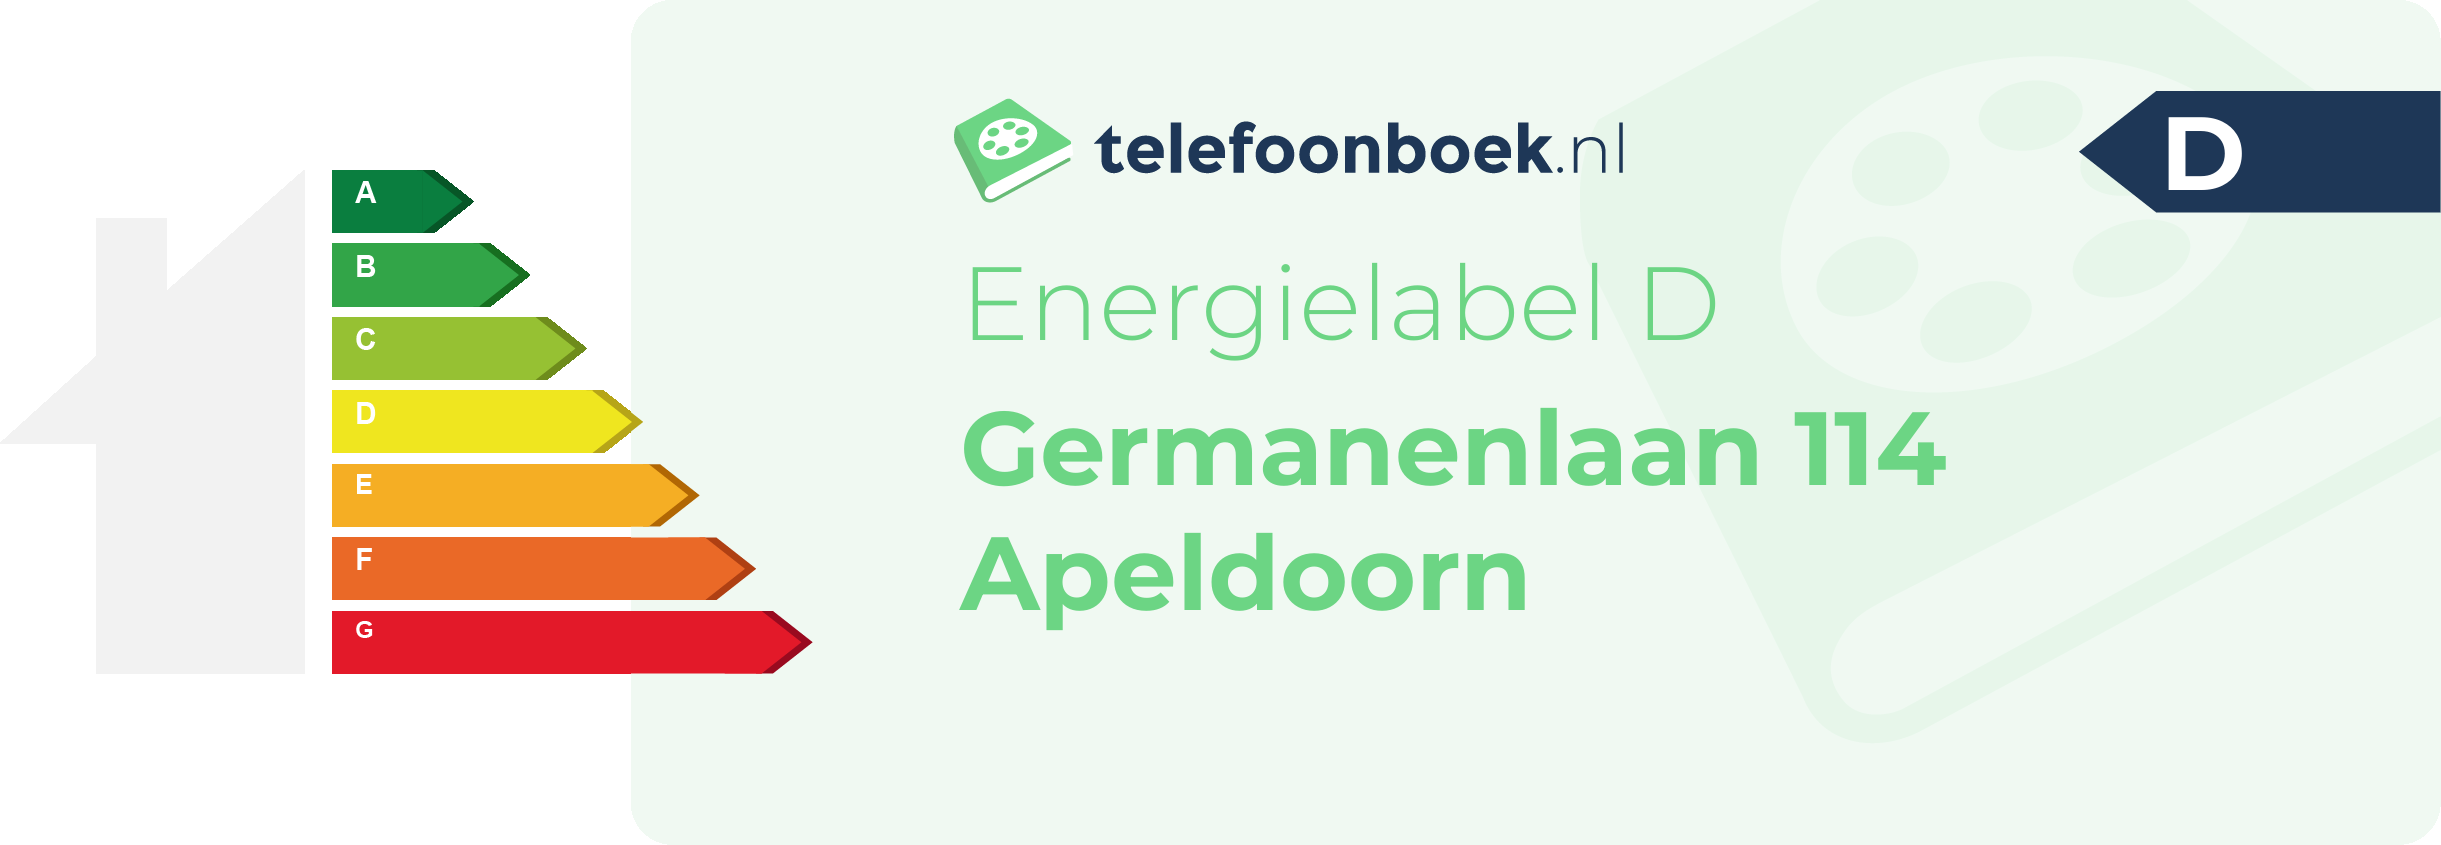 Energielabel Germanenlaan 114 Apeldoorn